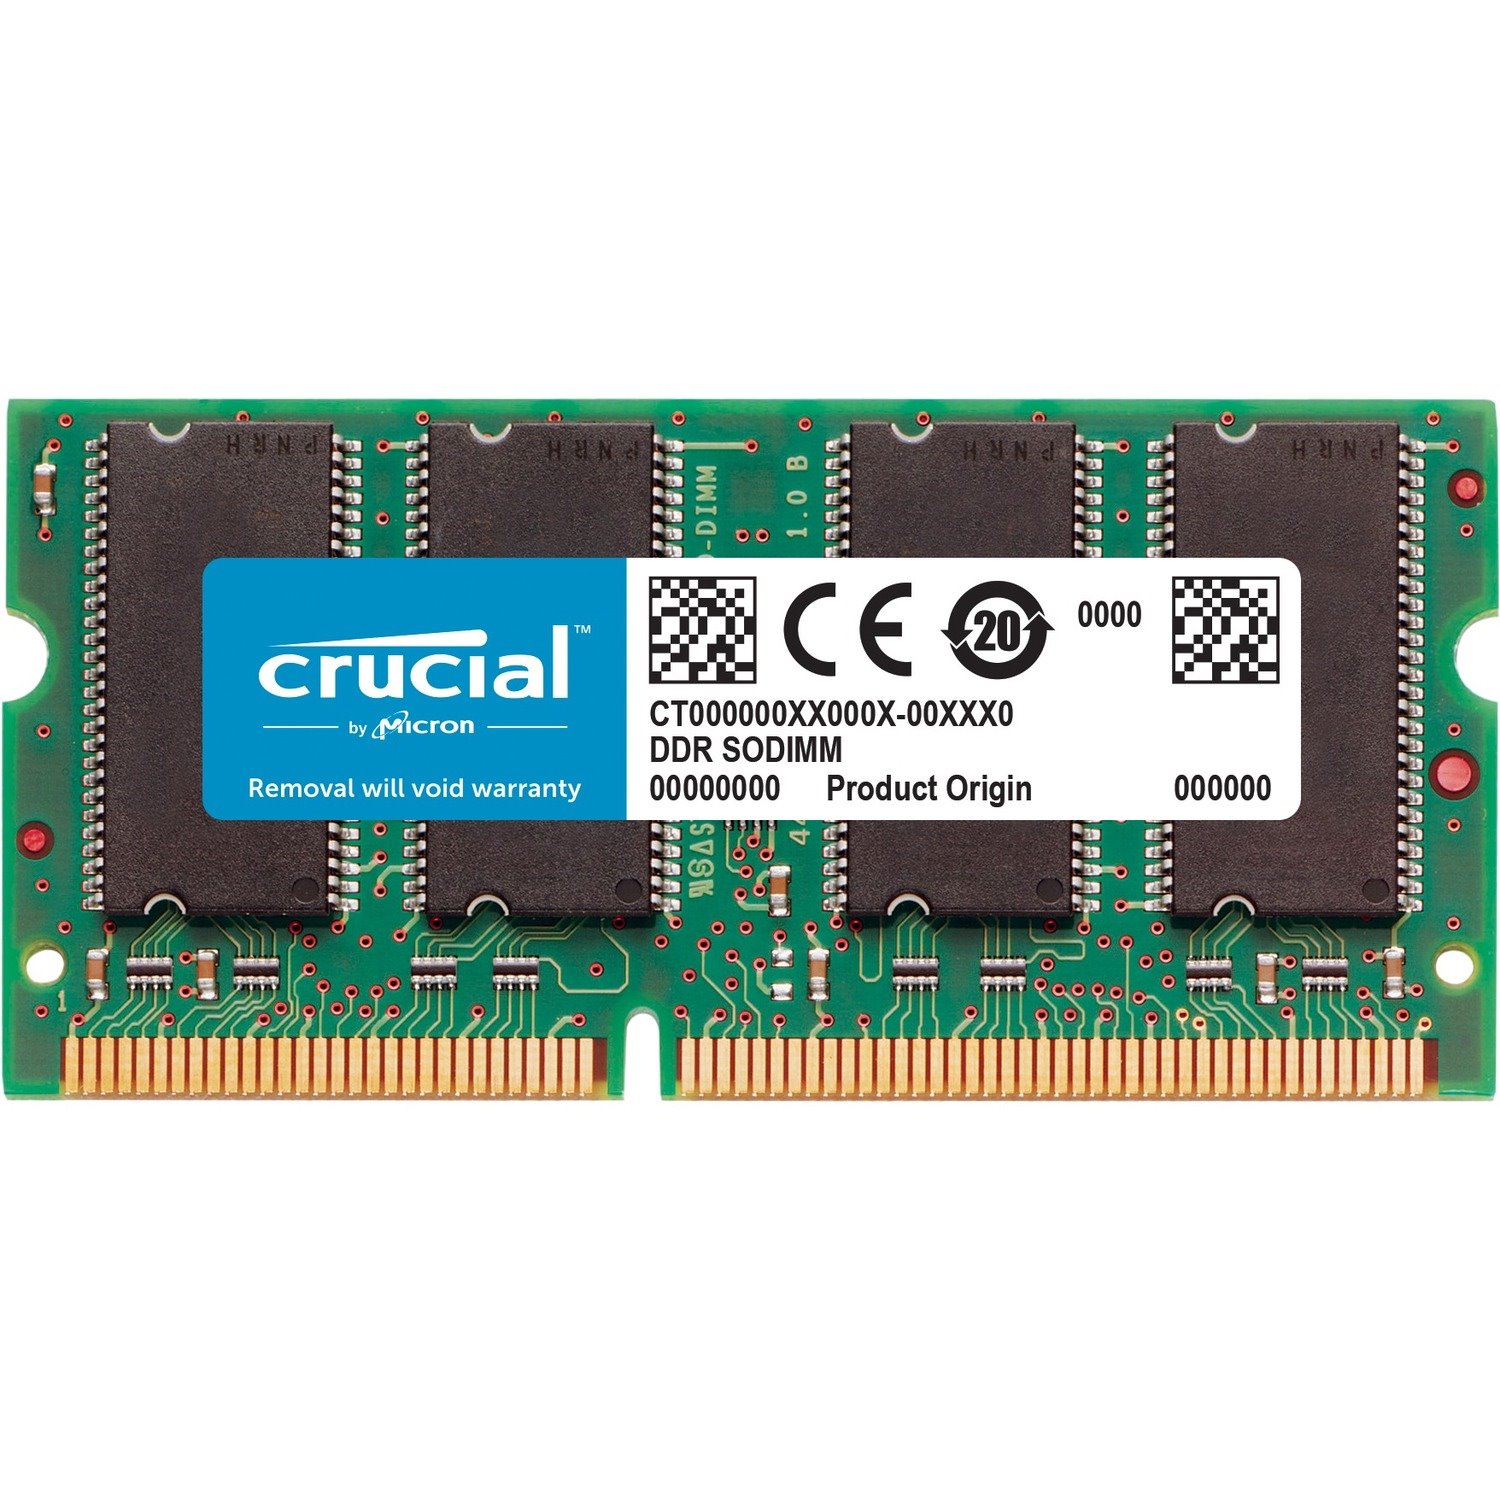 Crucial 16GB (1 x 16 GB) DDR3 SDRAM Memory Module